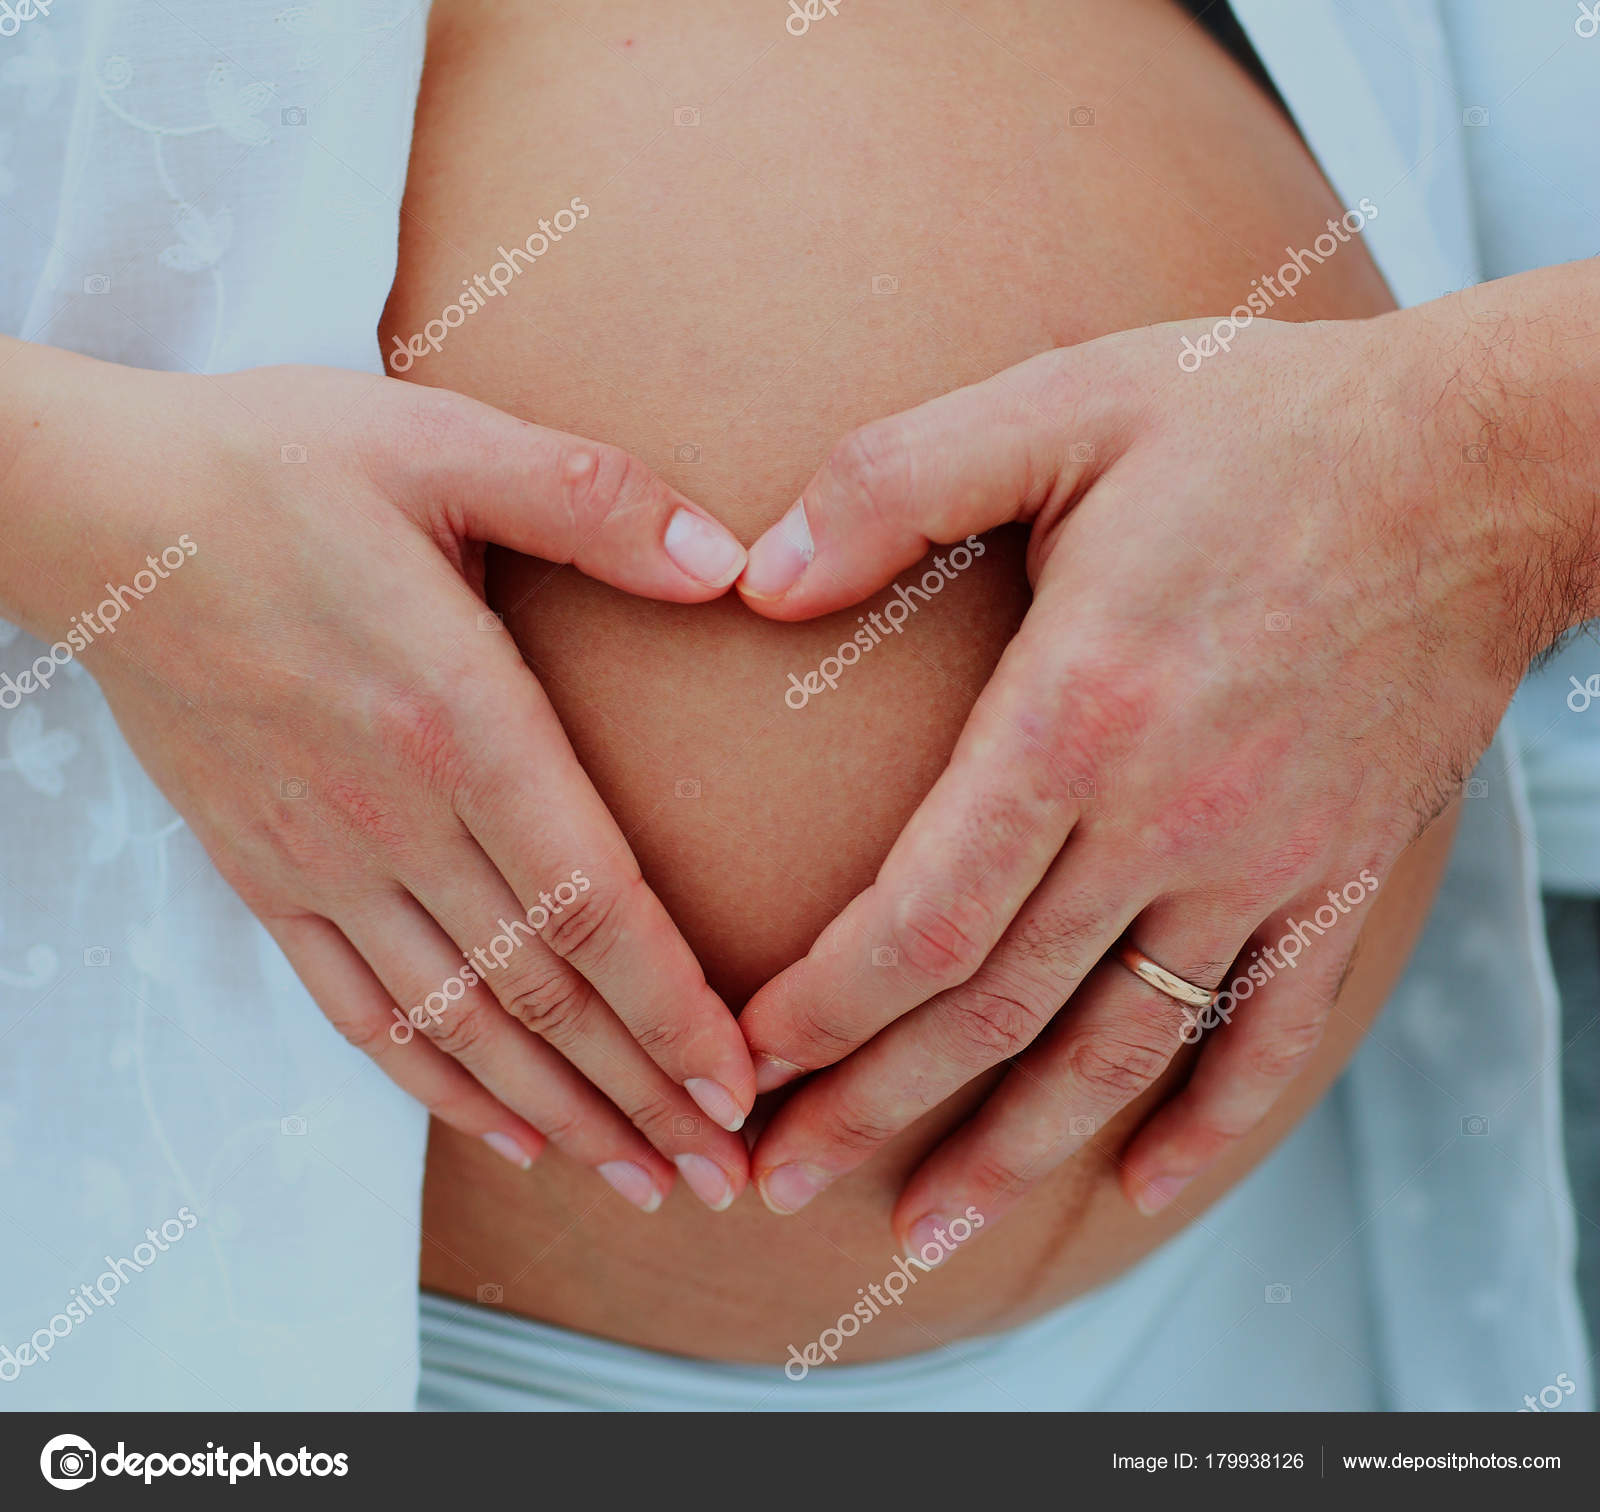 Крупным планом изображение сердца мамами и папами руки ее ребенка шишка .  стоковое фото ©depositedhar 179938126